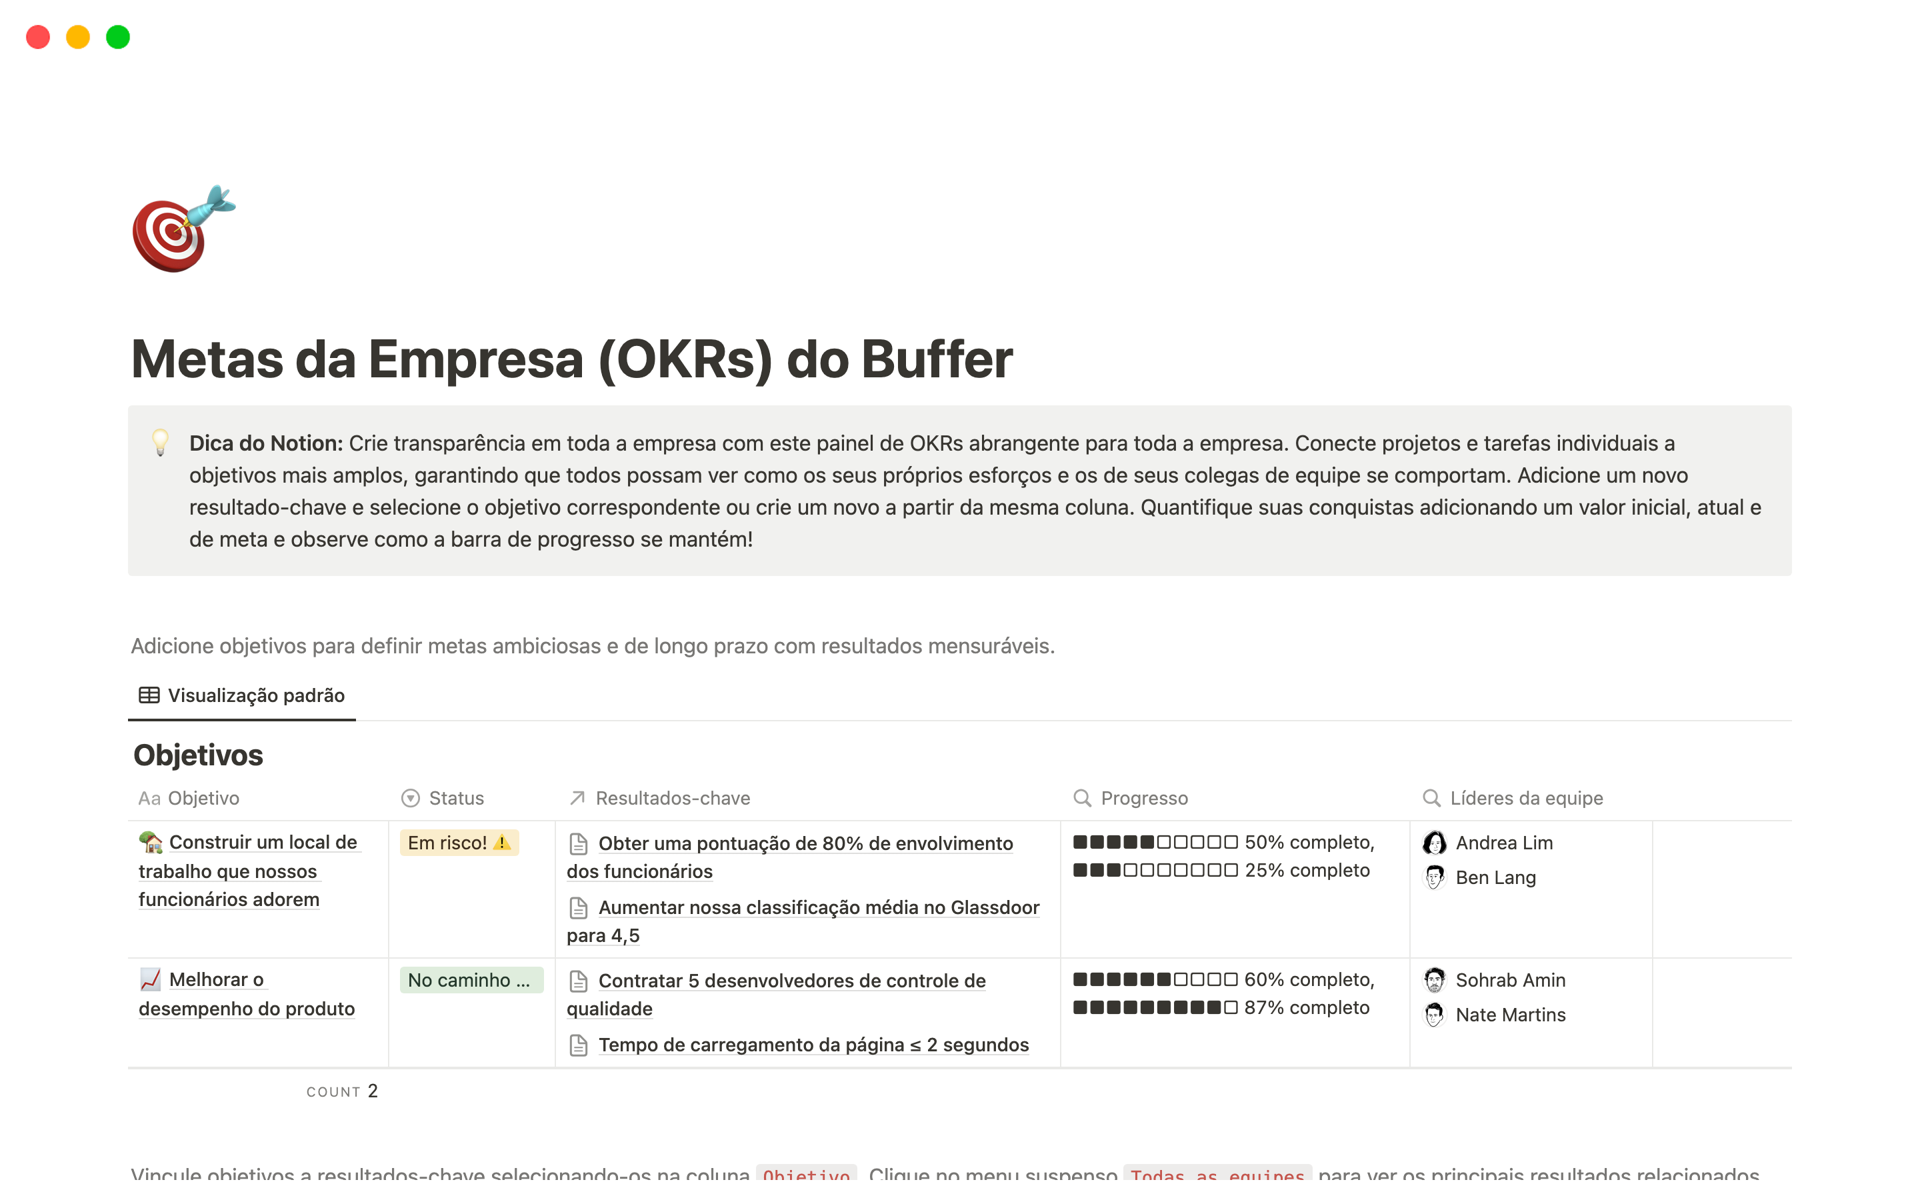 Uma prévia do modelo para Metas da Empresa (OKRs) do Buffer